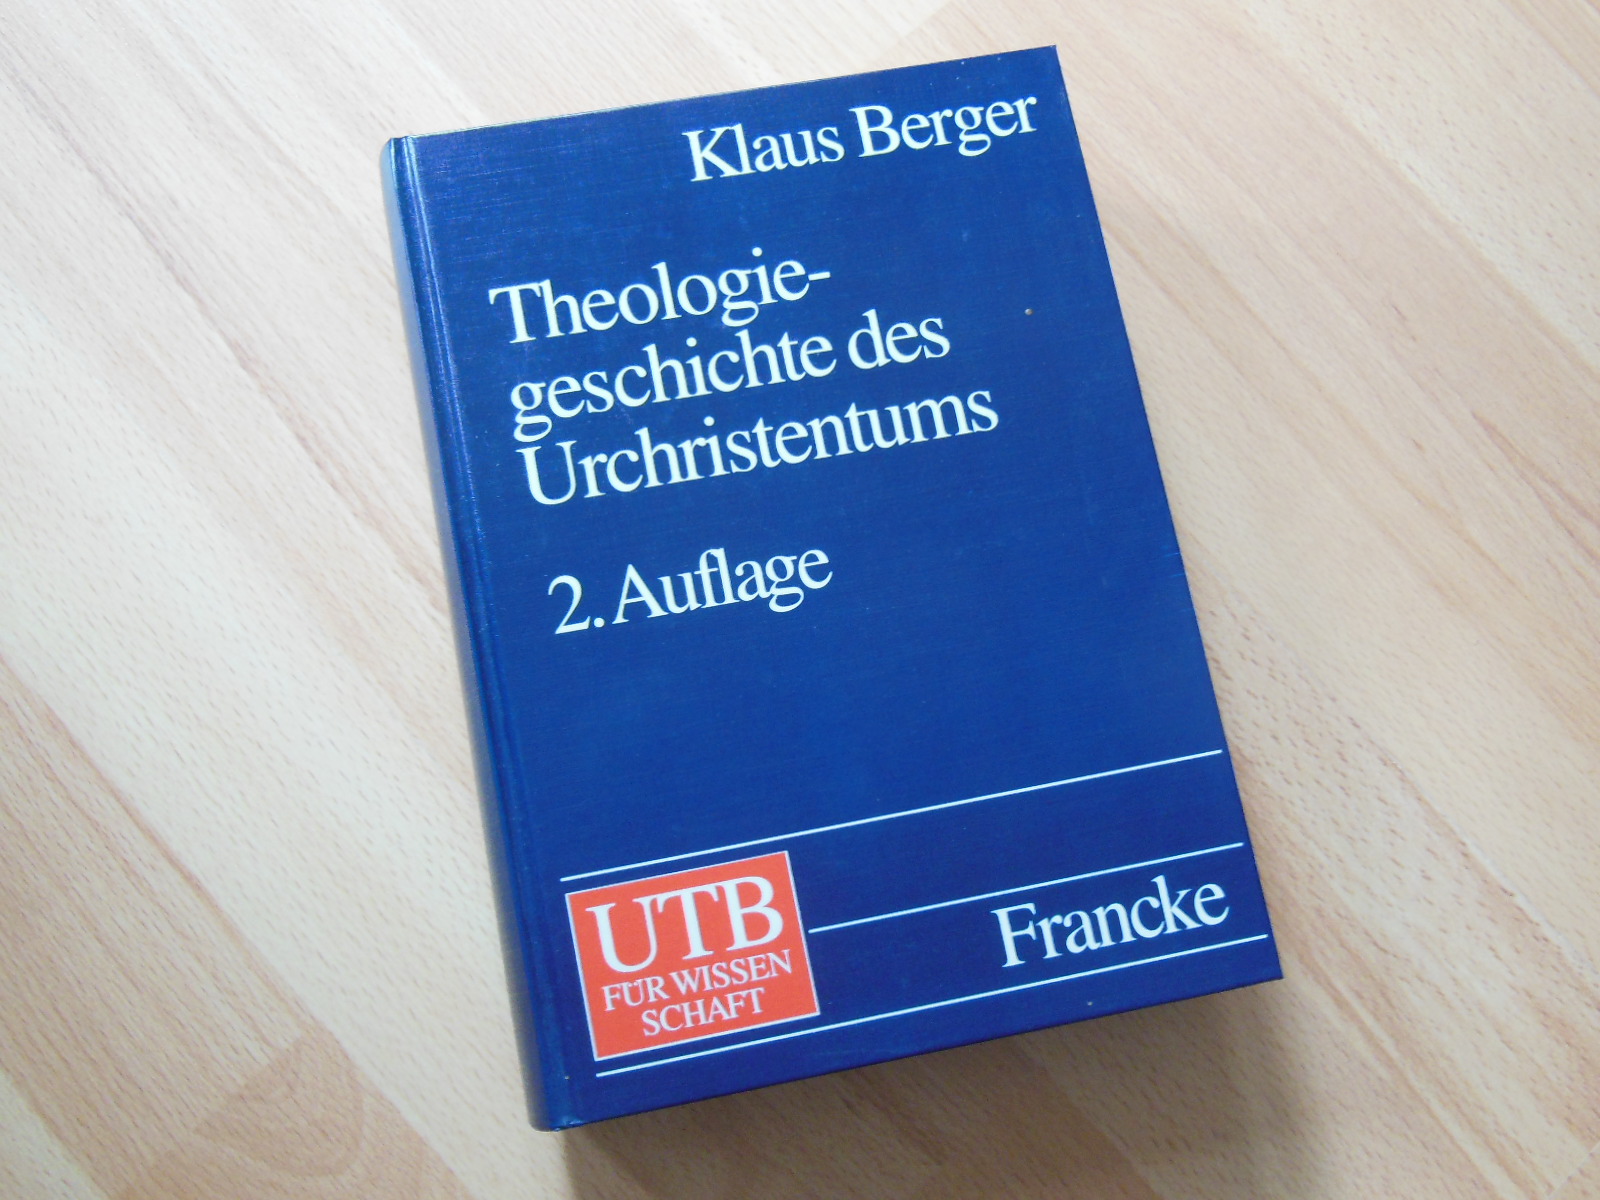 Theologiegeschichte des Urchristentums. Theologie des Neuen Testaments. - Neues Testament. - Berger, Klaus